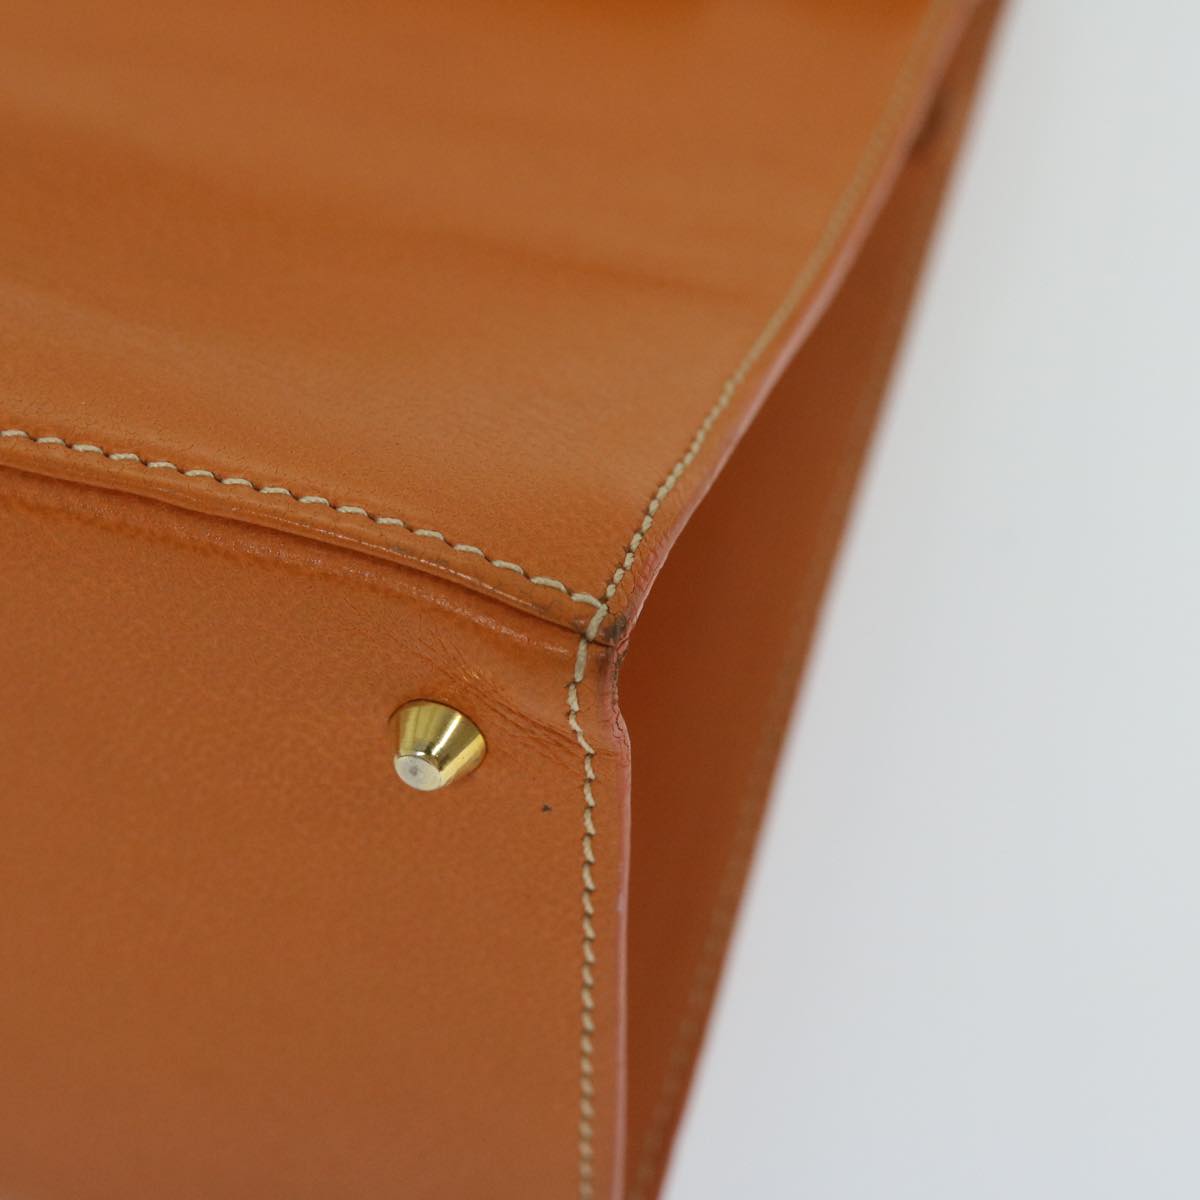 MORABITO Scalar 28 Hand Bag Leather Orange Auth am5465